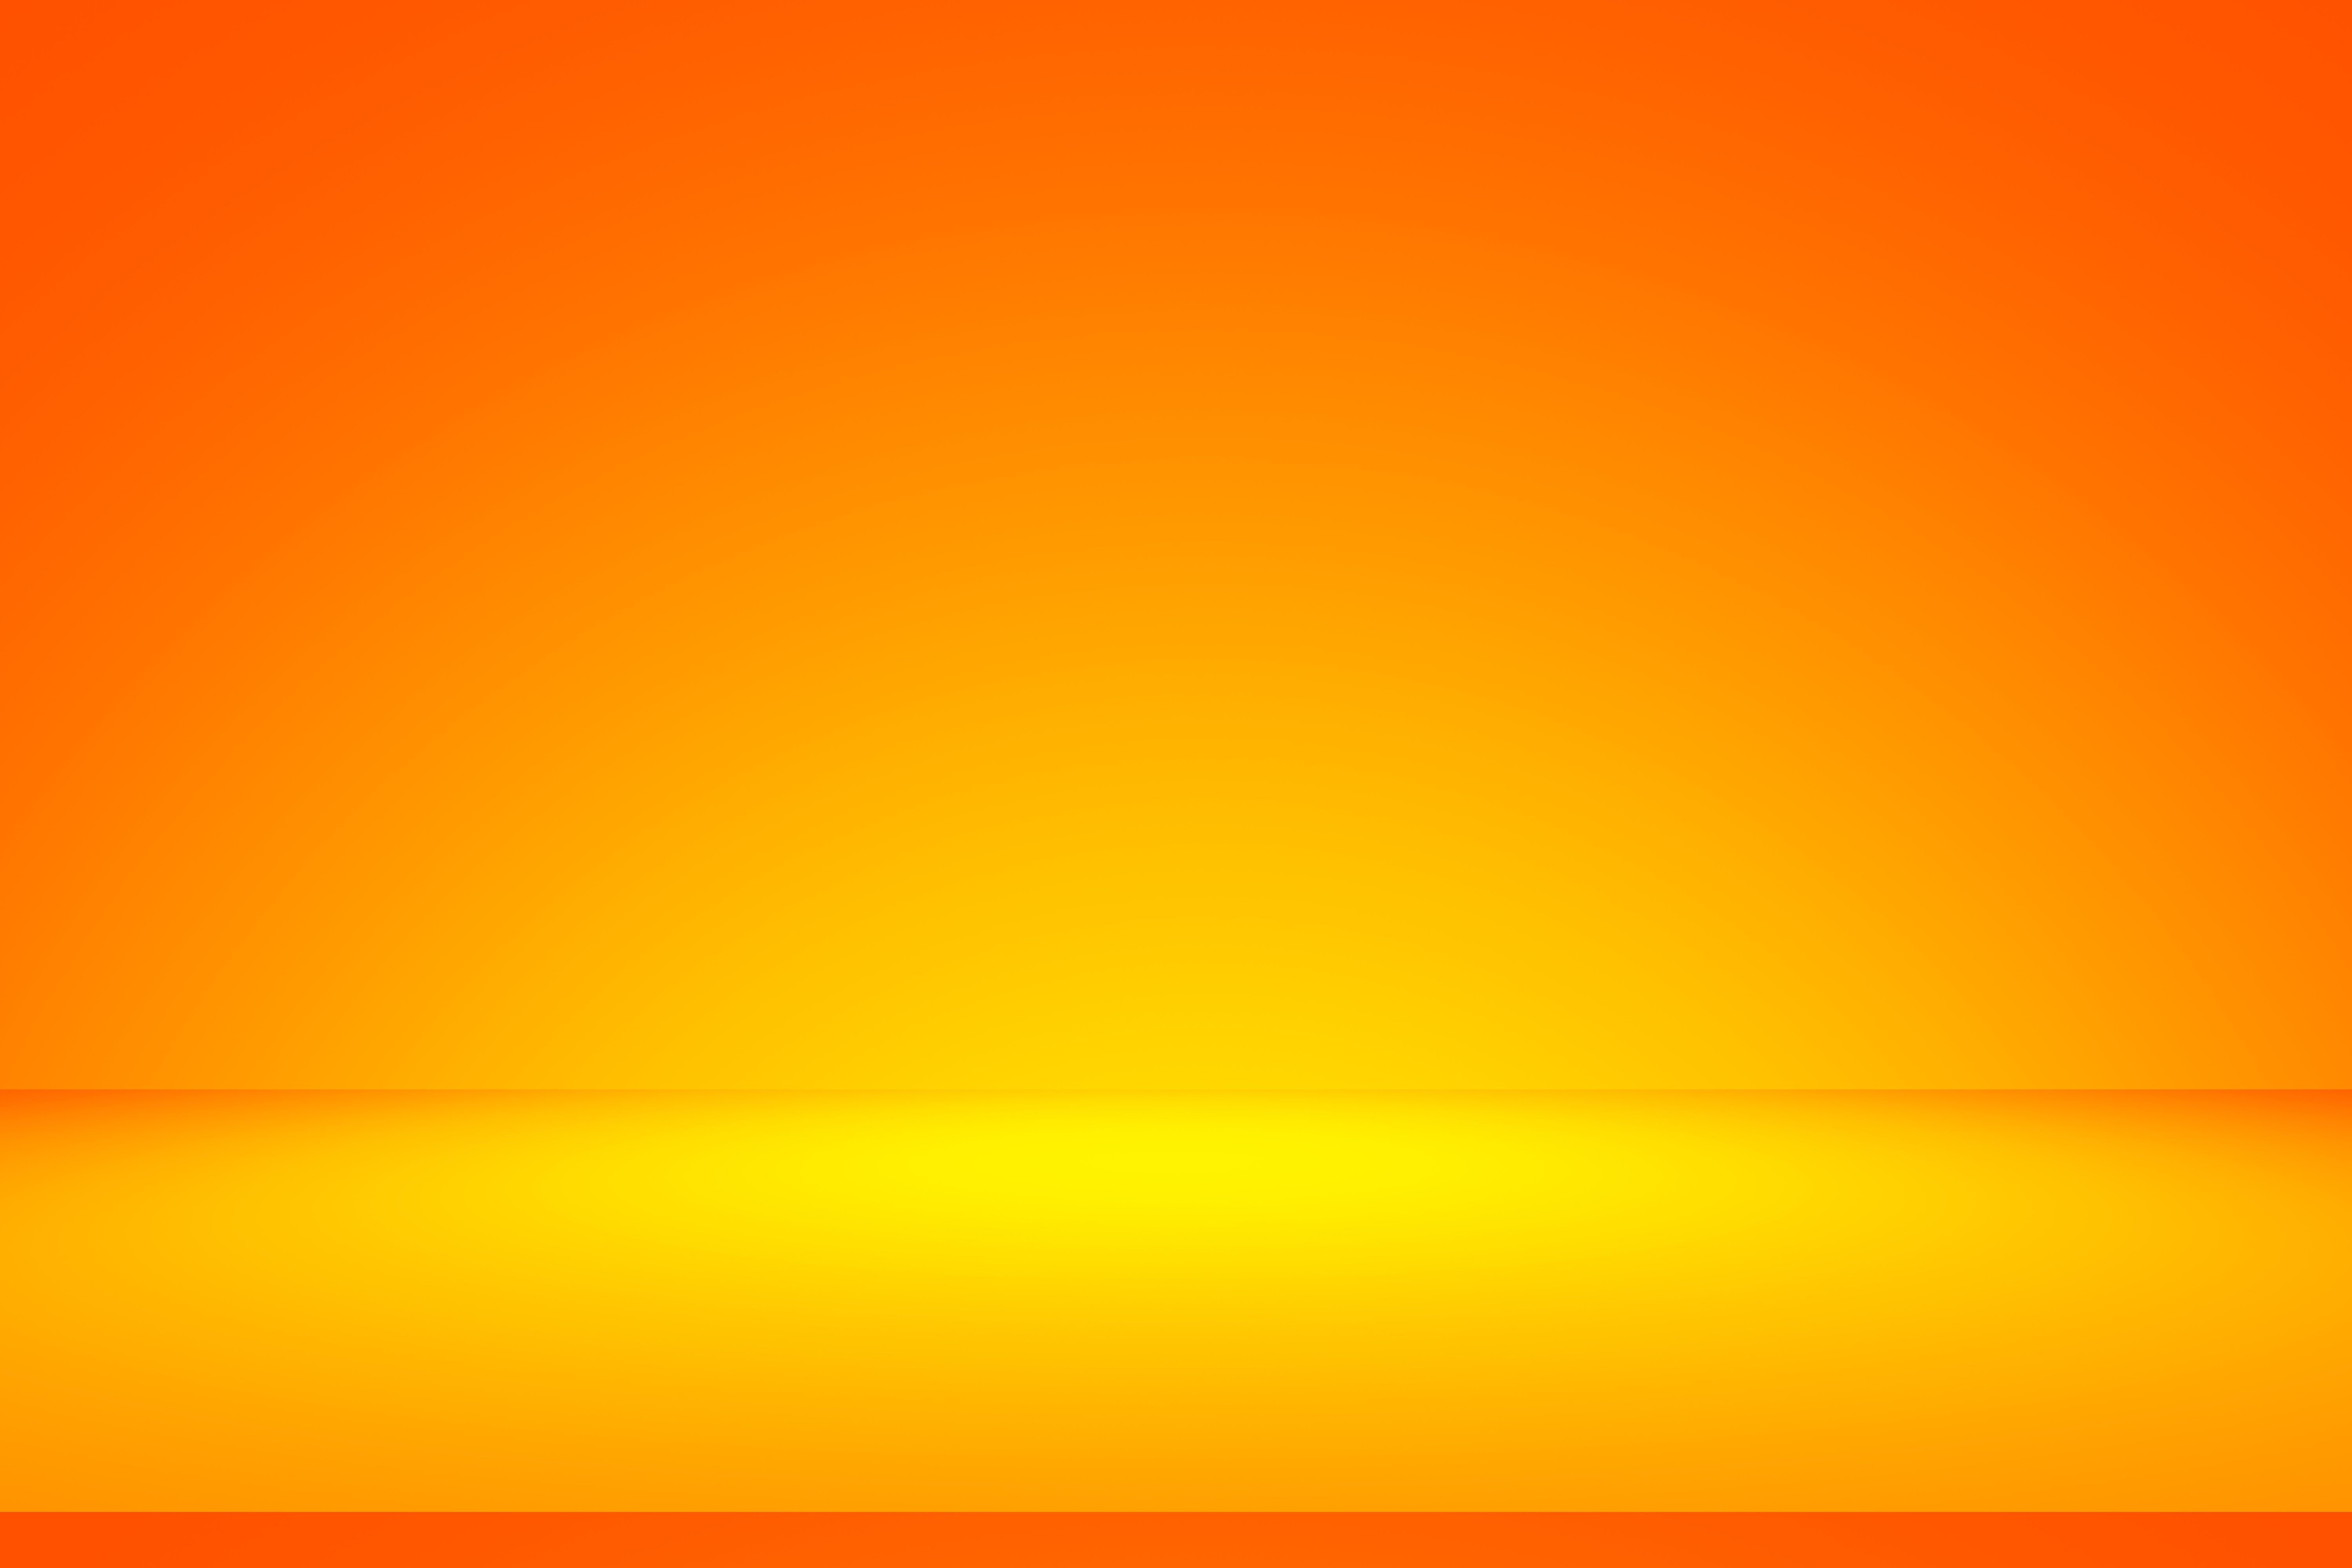 Tuyển chọn 666 Yellow orange mix background với hiệu ứng màu sắc rực rỡ